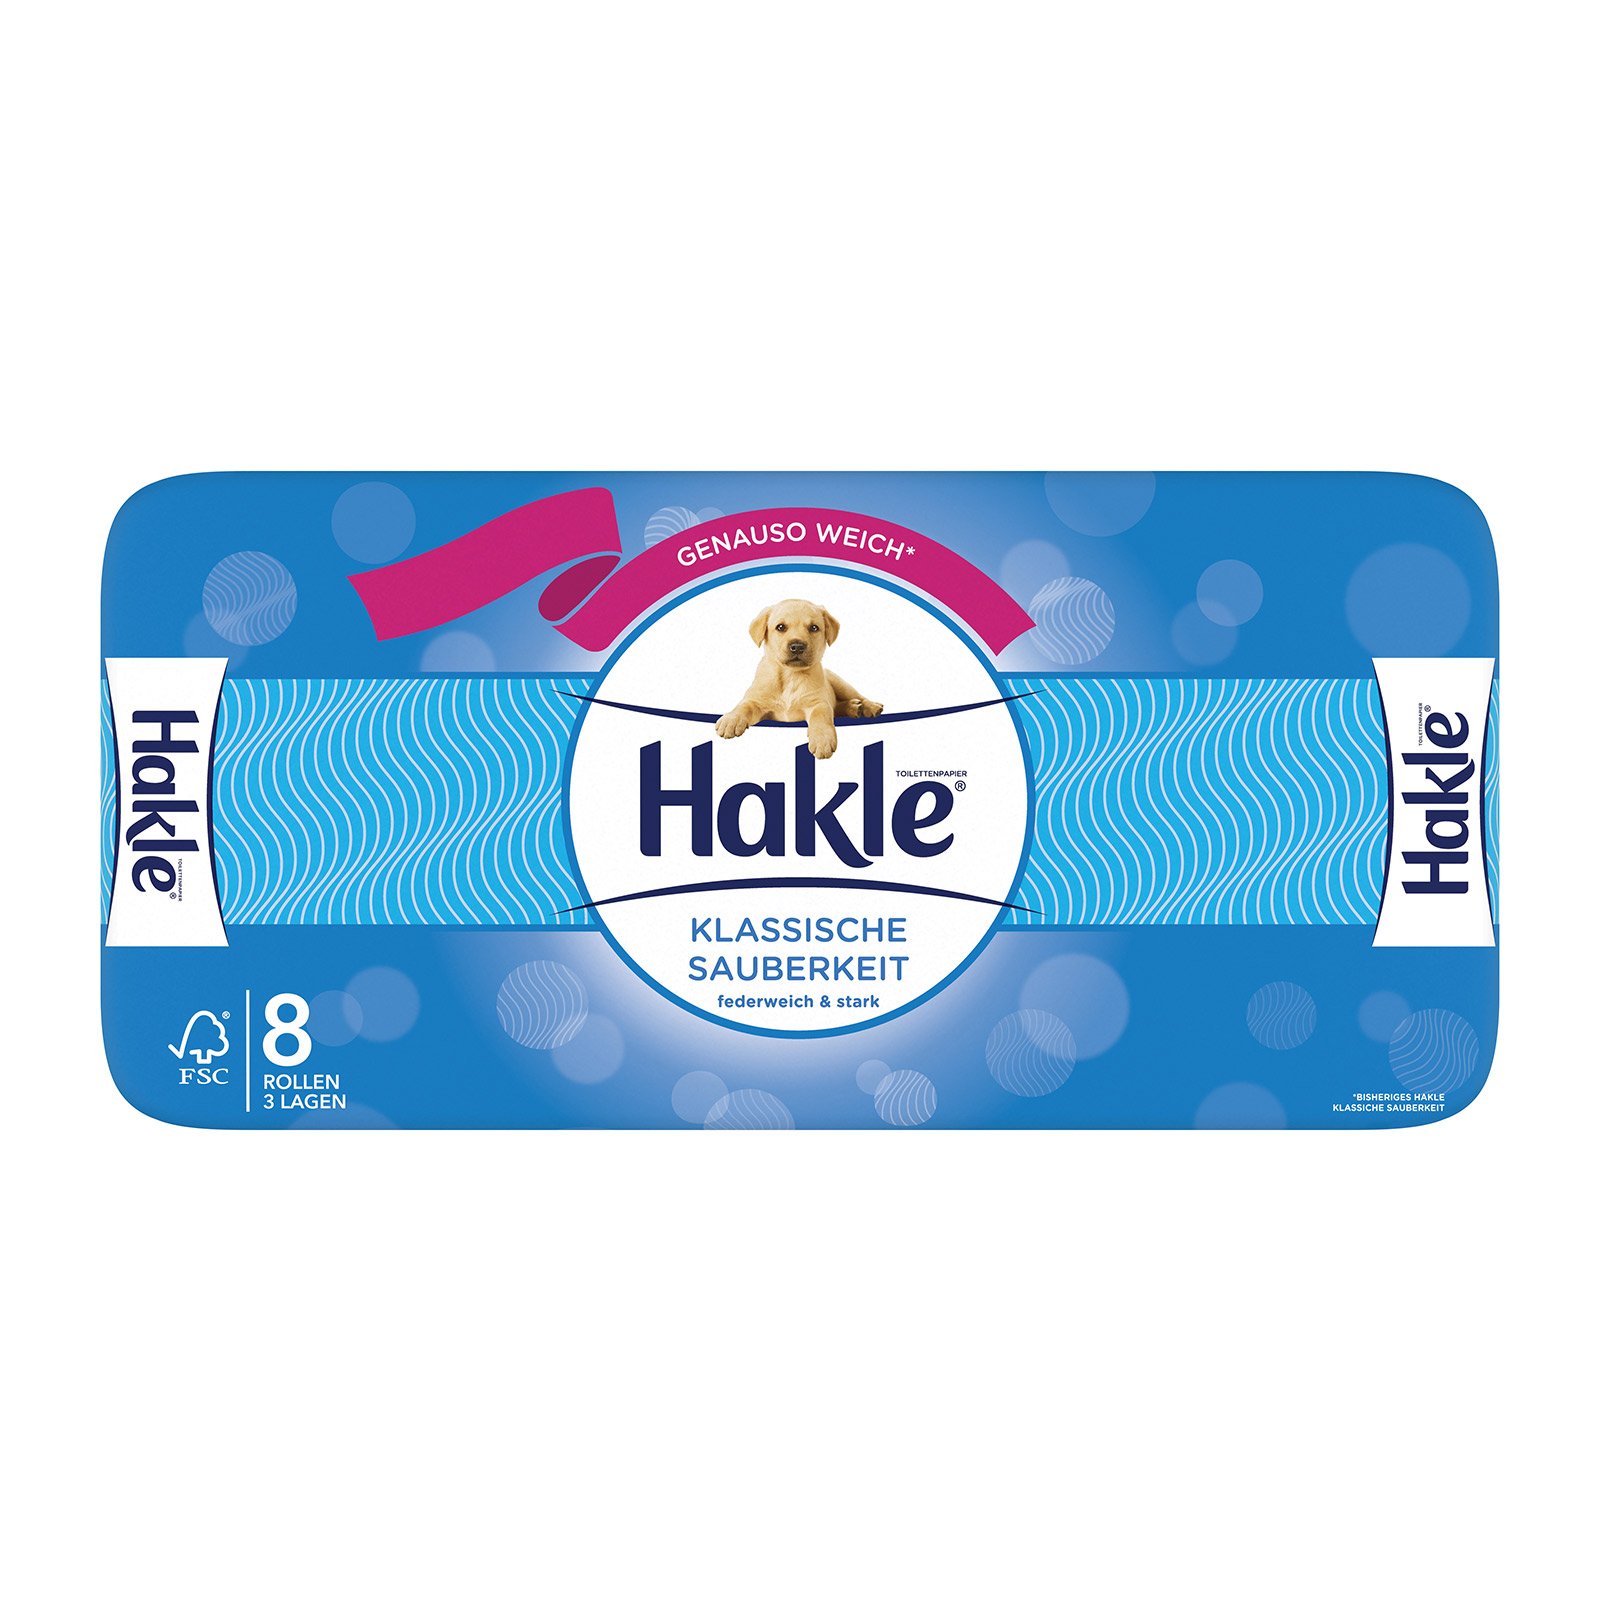 Hakle Toilettenpapier Klassiche Sauberkeit Shop | BILLA Online